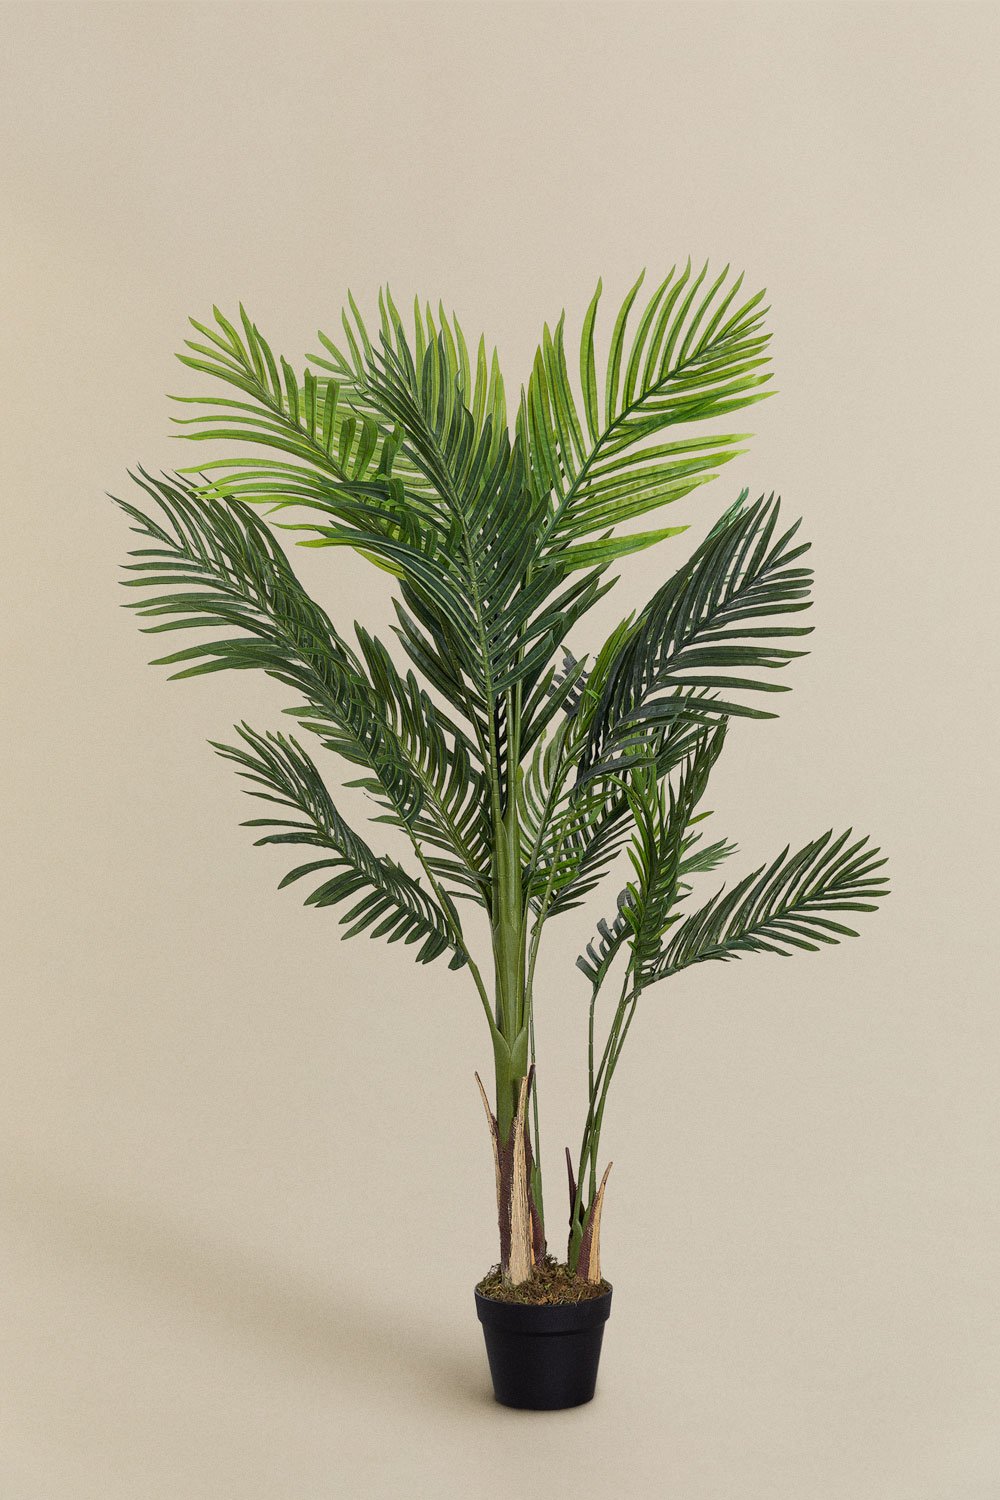 Planta Artificial Decorativa Bananera 160 cm - SKLUM